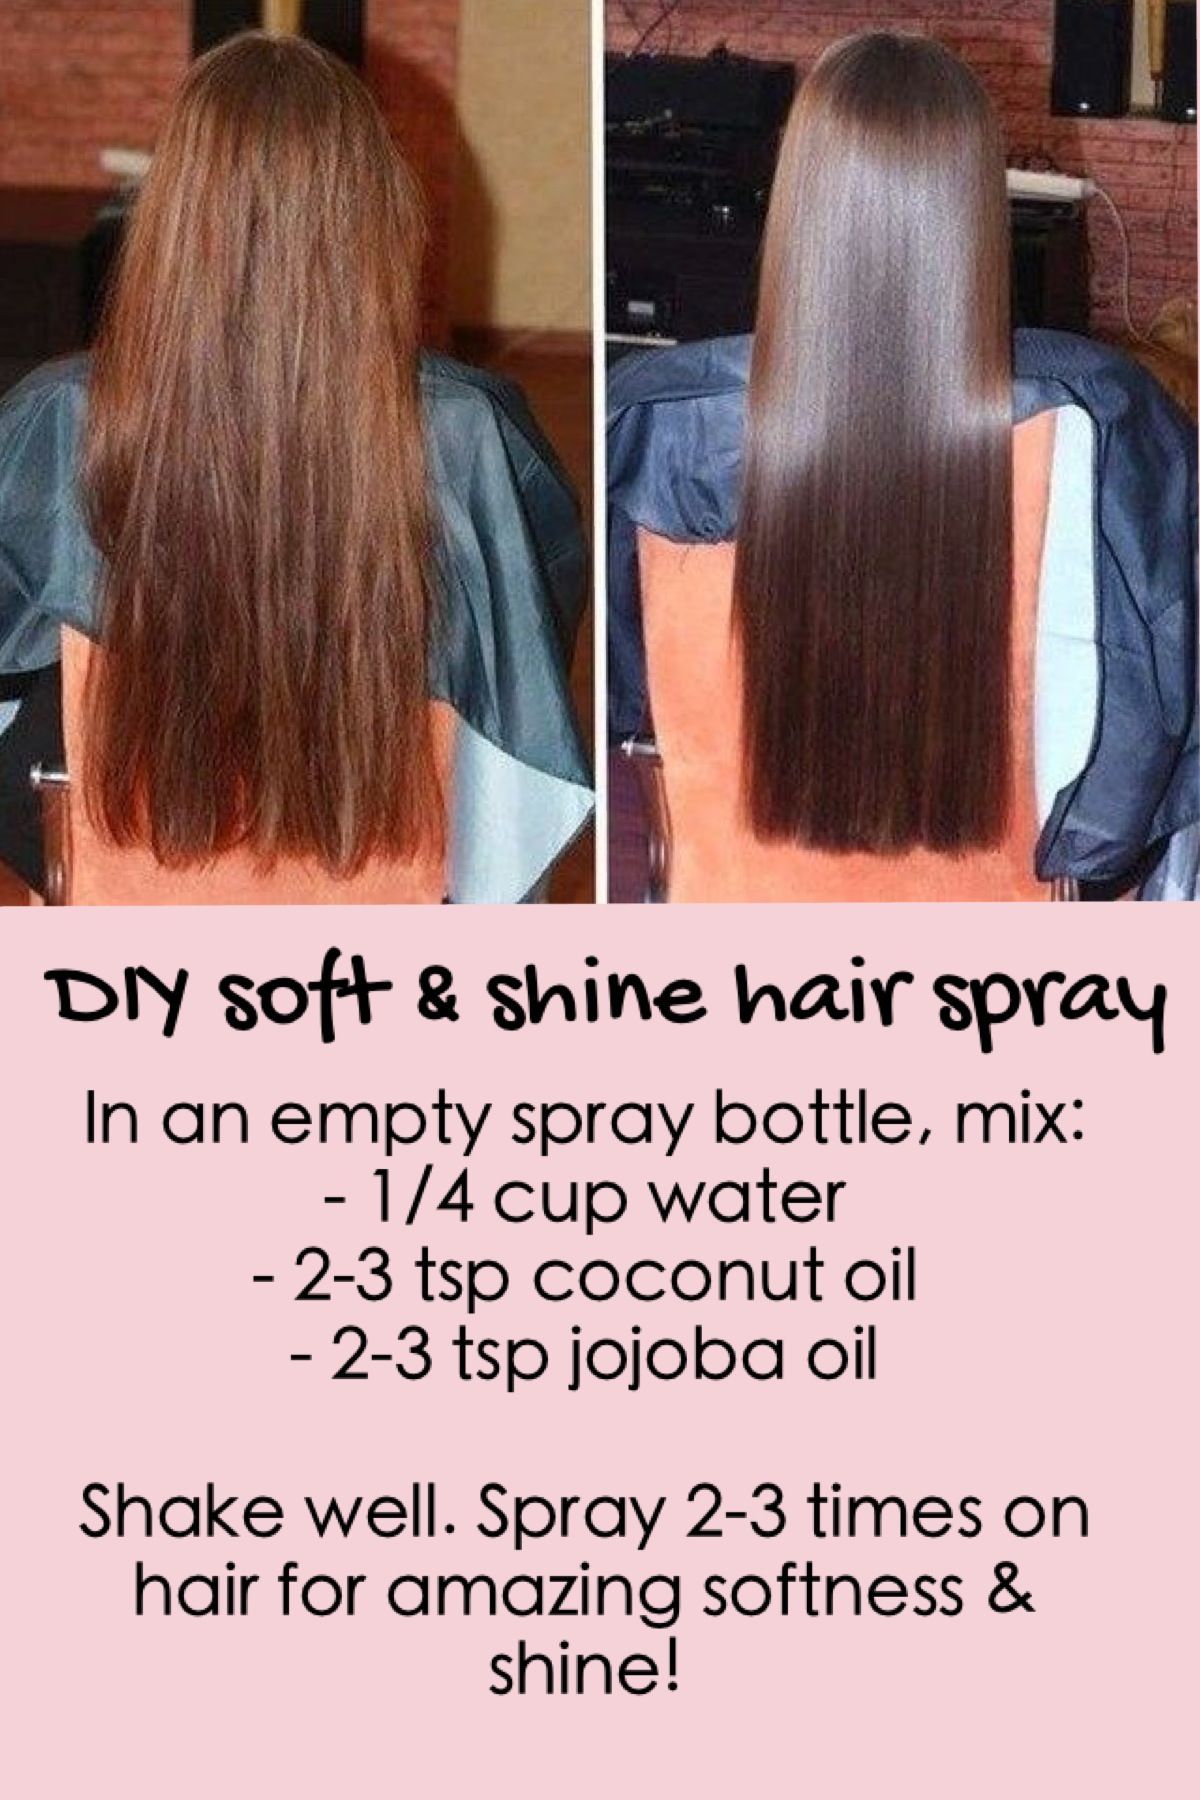 DIY soft & shiny hair spray!